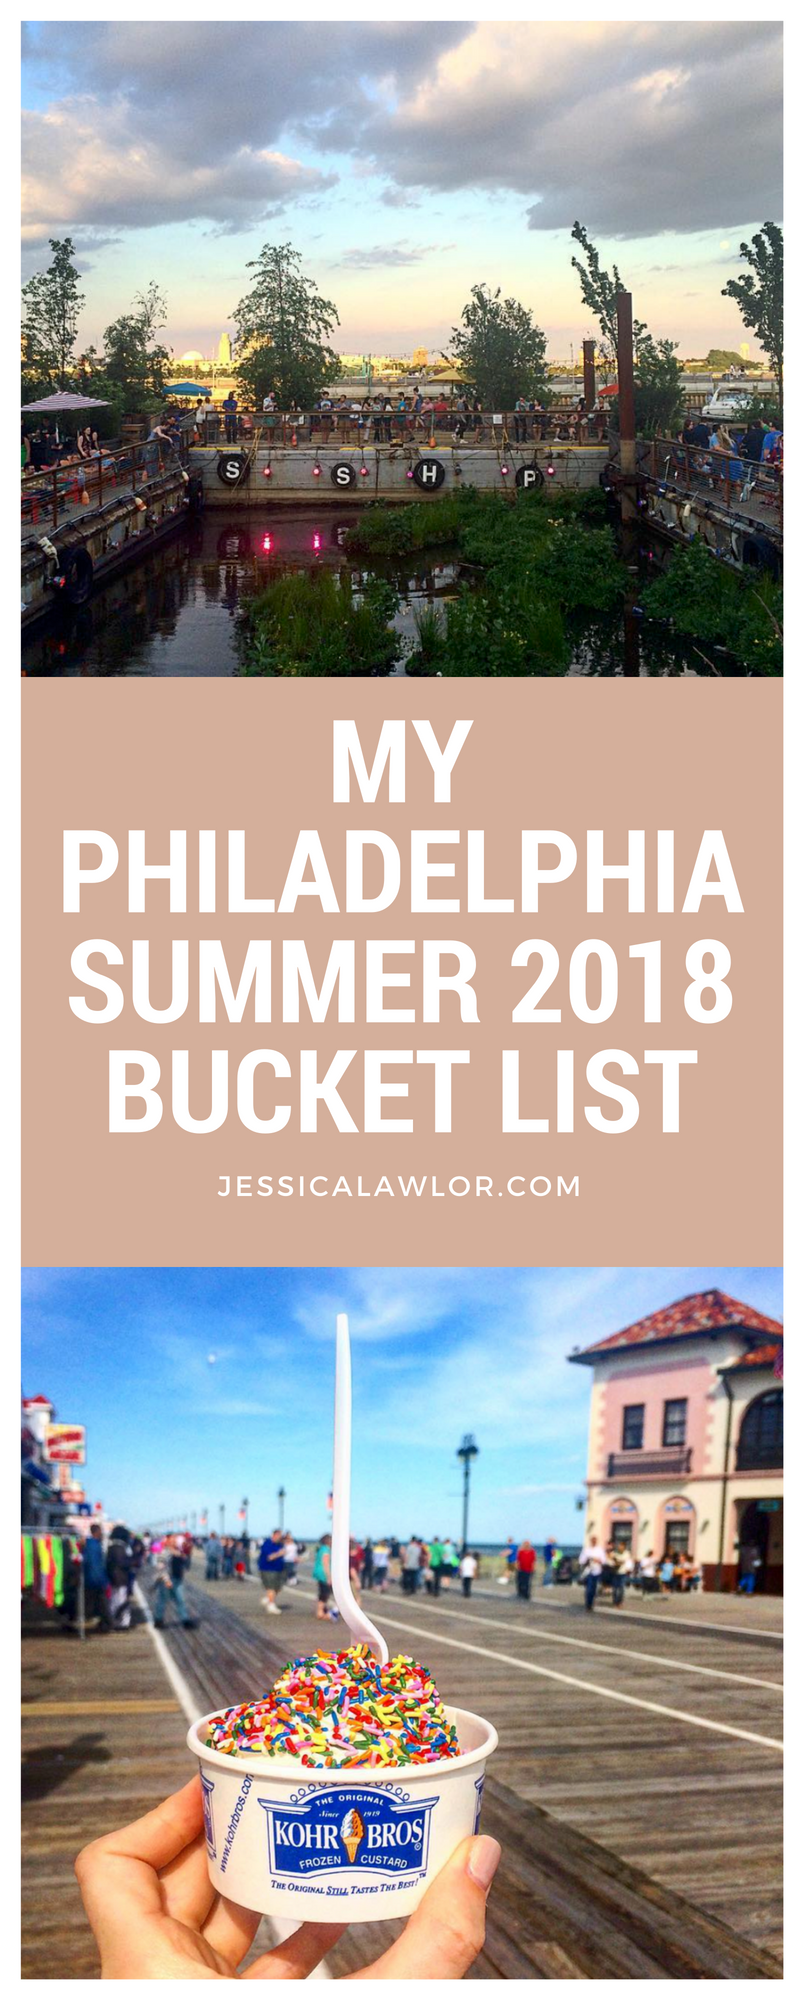 My Philadelphia Summer Bucket List Jessica Lawlor